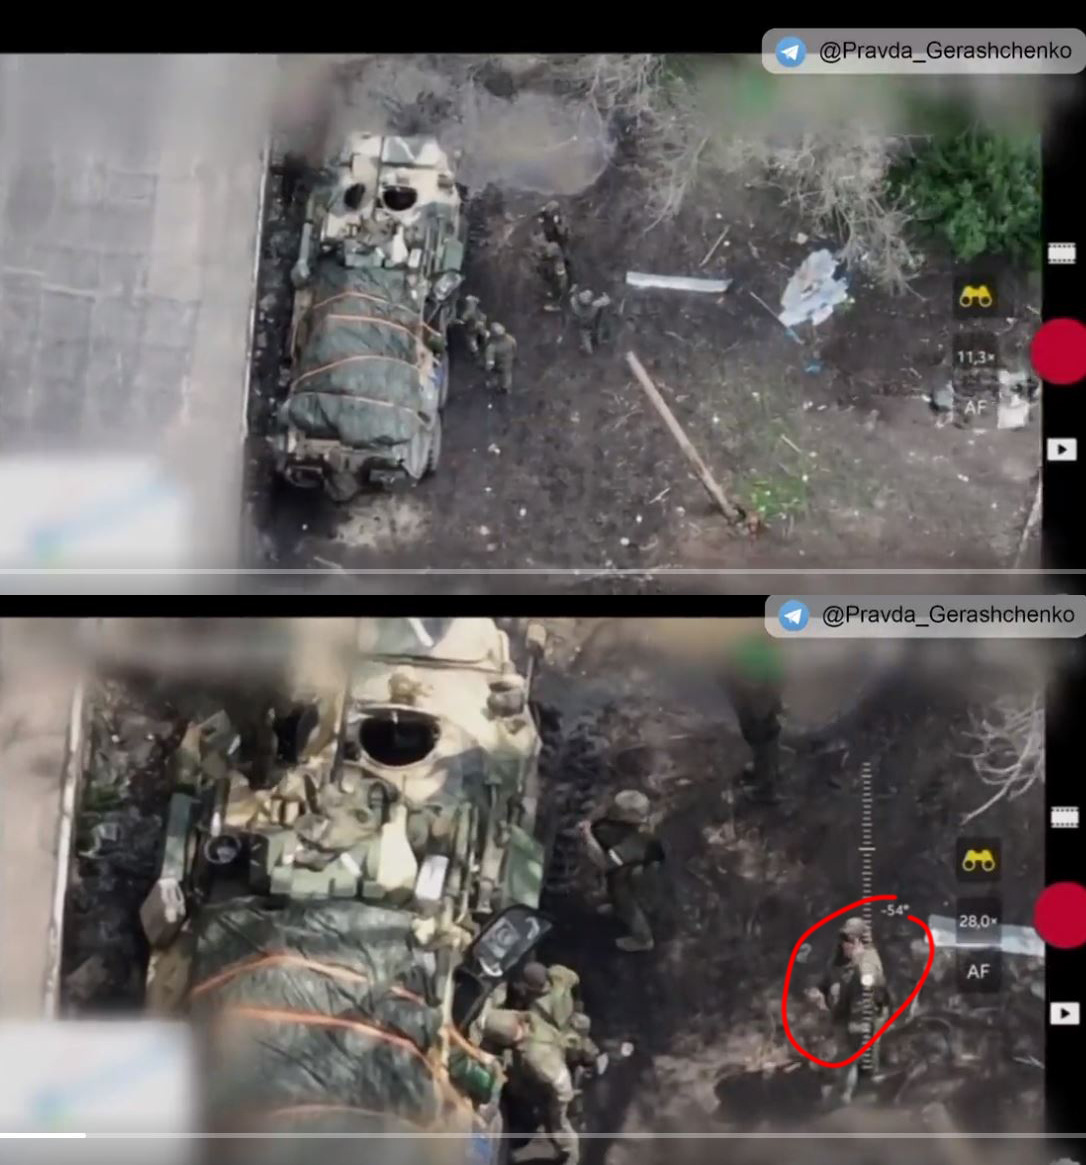 Russischer Soldat zeigt ukrainischer Drohne den Mittelfinger, danach wird er in die Luft gesprengt